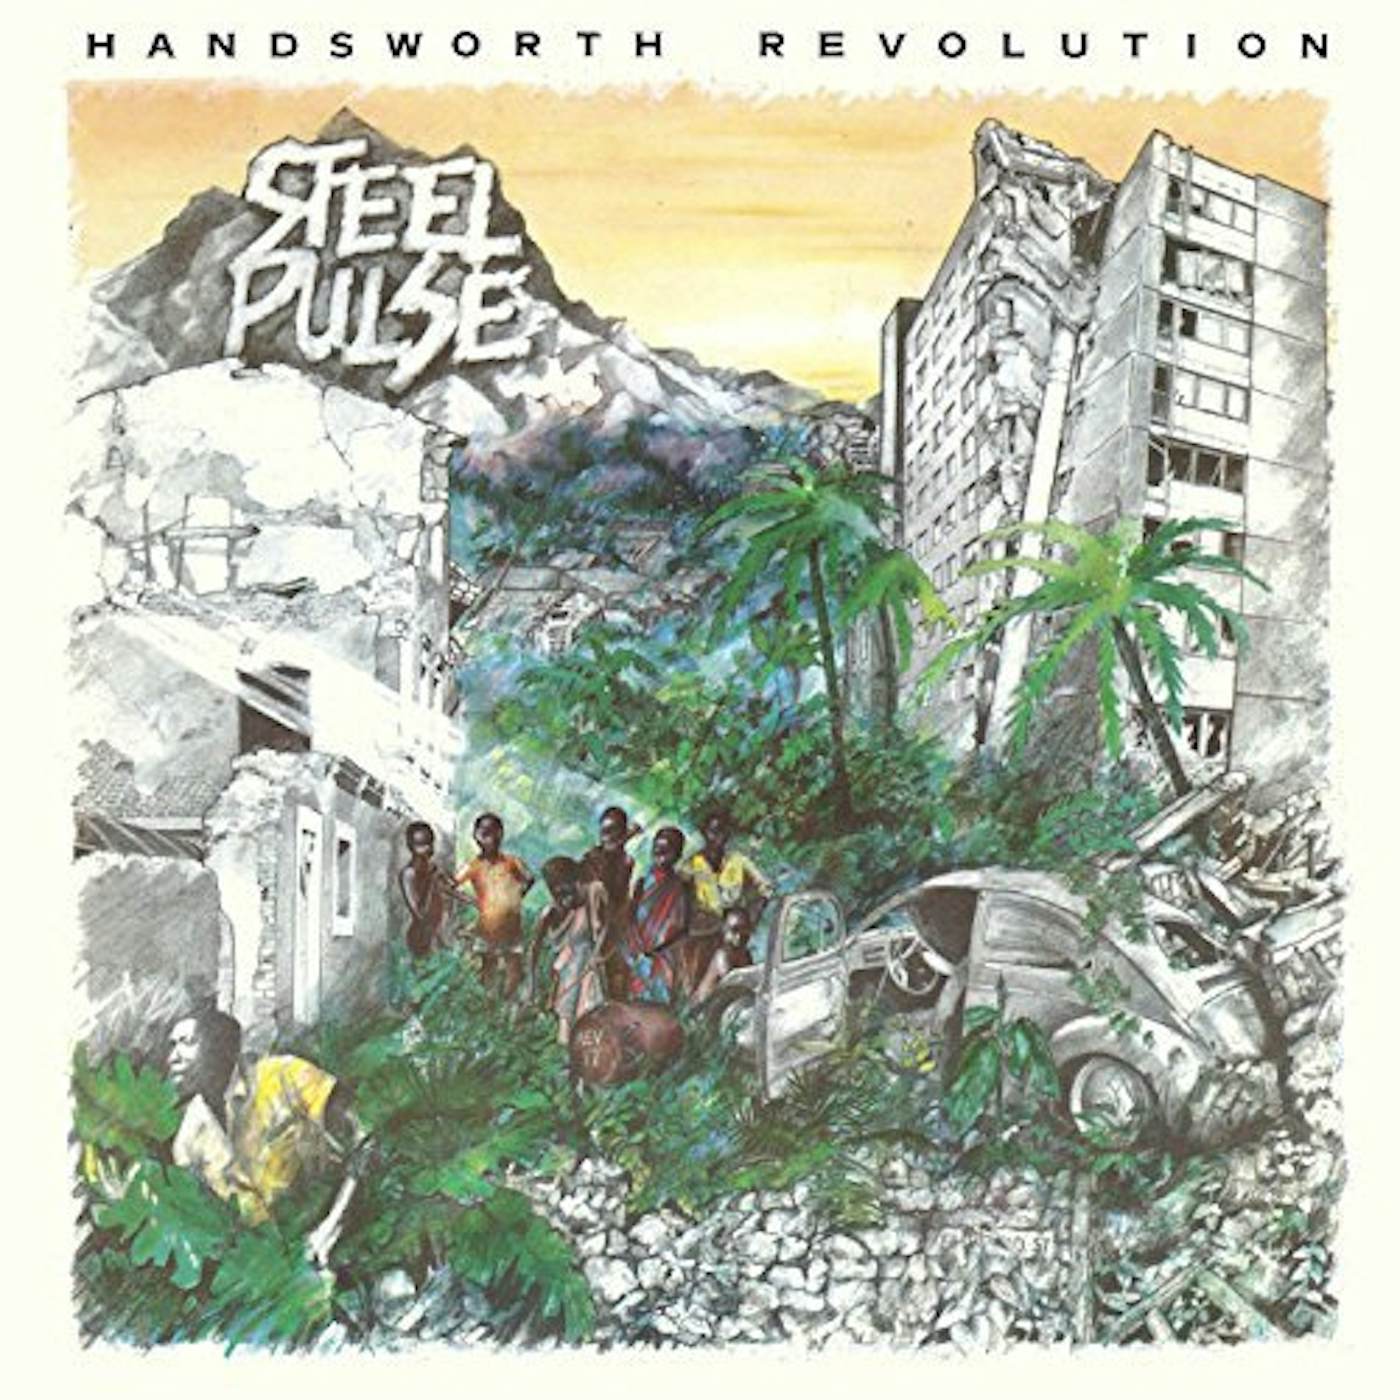 Steel Pulse Handsworth Revolution Vinyl Record